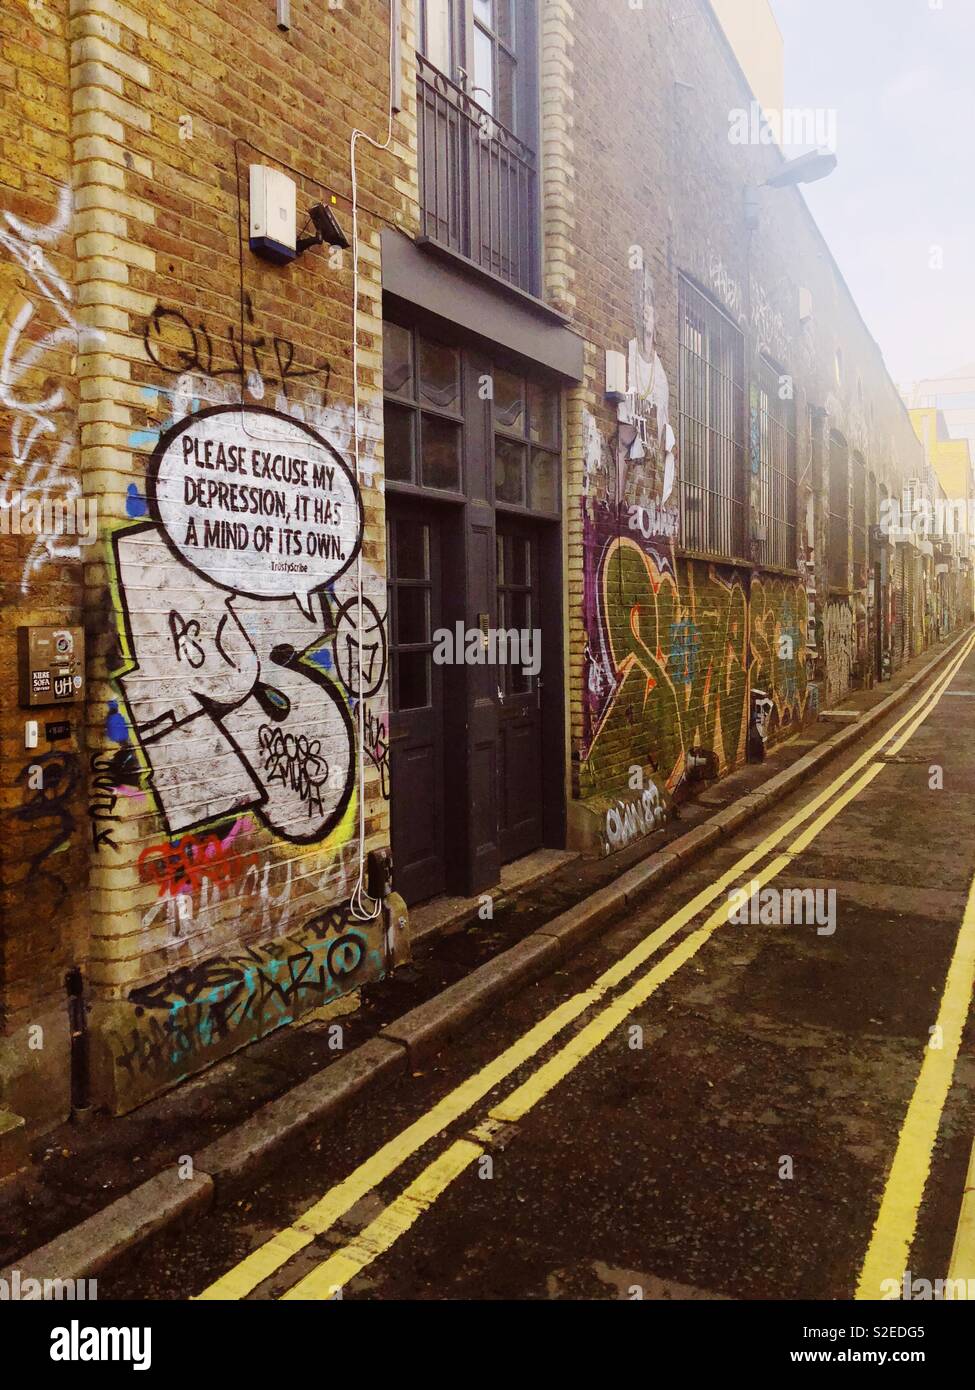 Entschuldigen sie bitte meine Depression, es hat seinen eigenen Kopf. Slogan in der Sprechblase auf Mauer in Shoreditch, London durch die trustyscribe. Stockfoto